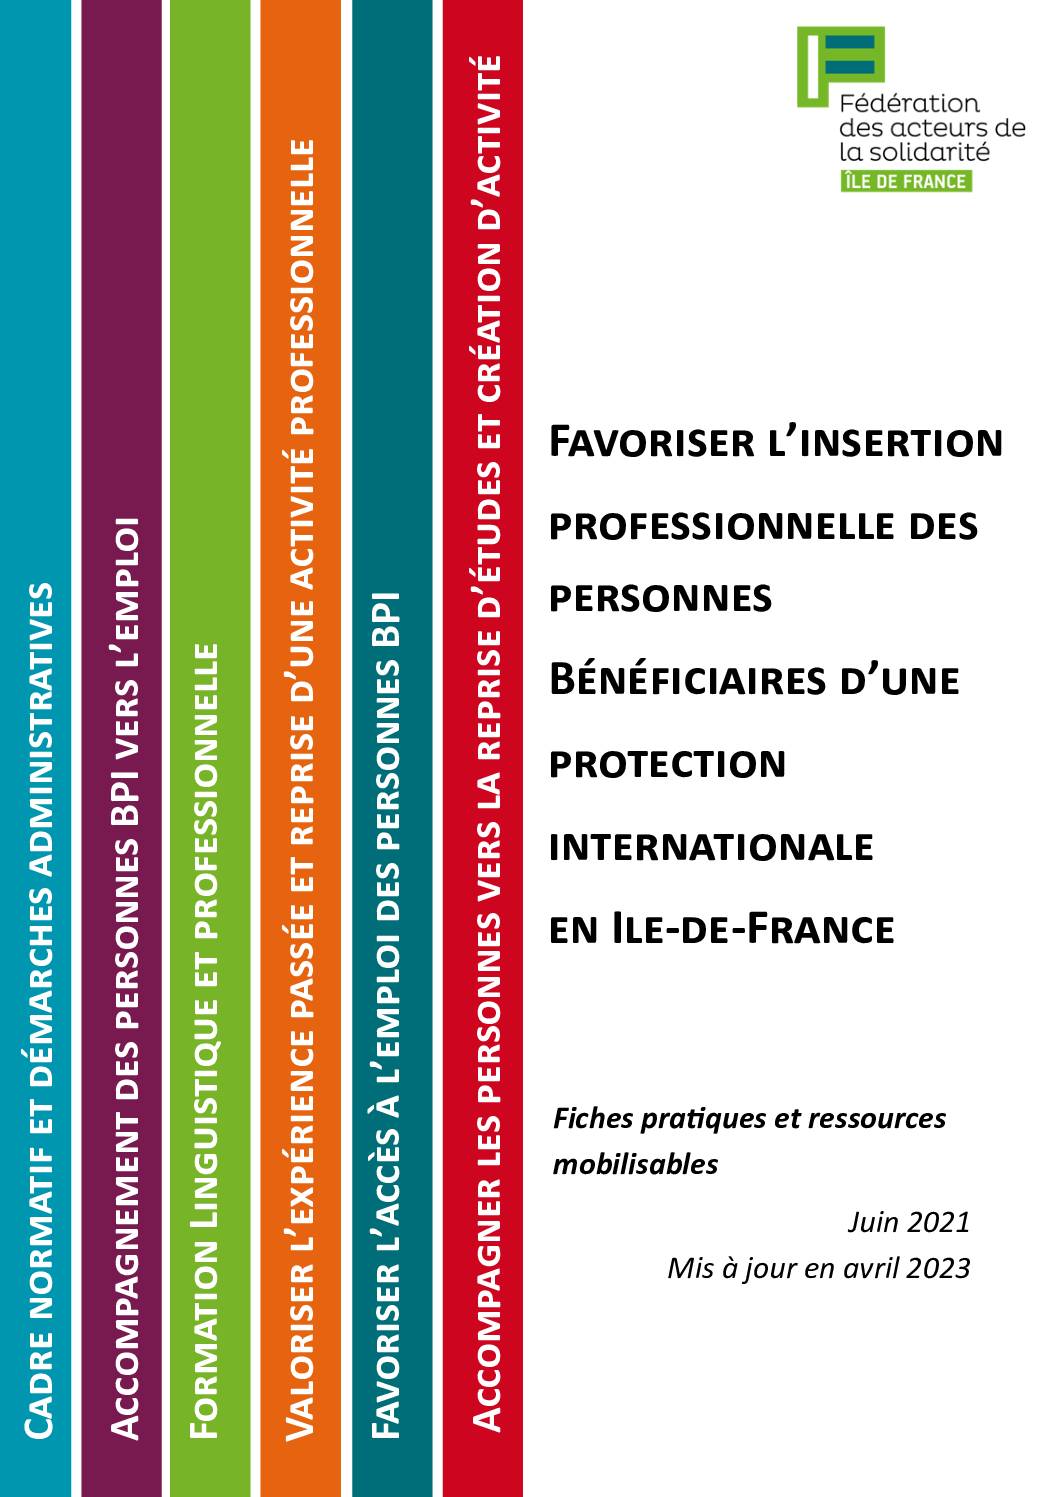 Accès à l'emploi et à la formation des personnes BPI en Ile-de-France - fiches pratiques et ressources mobilisables